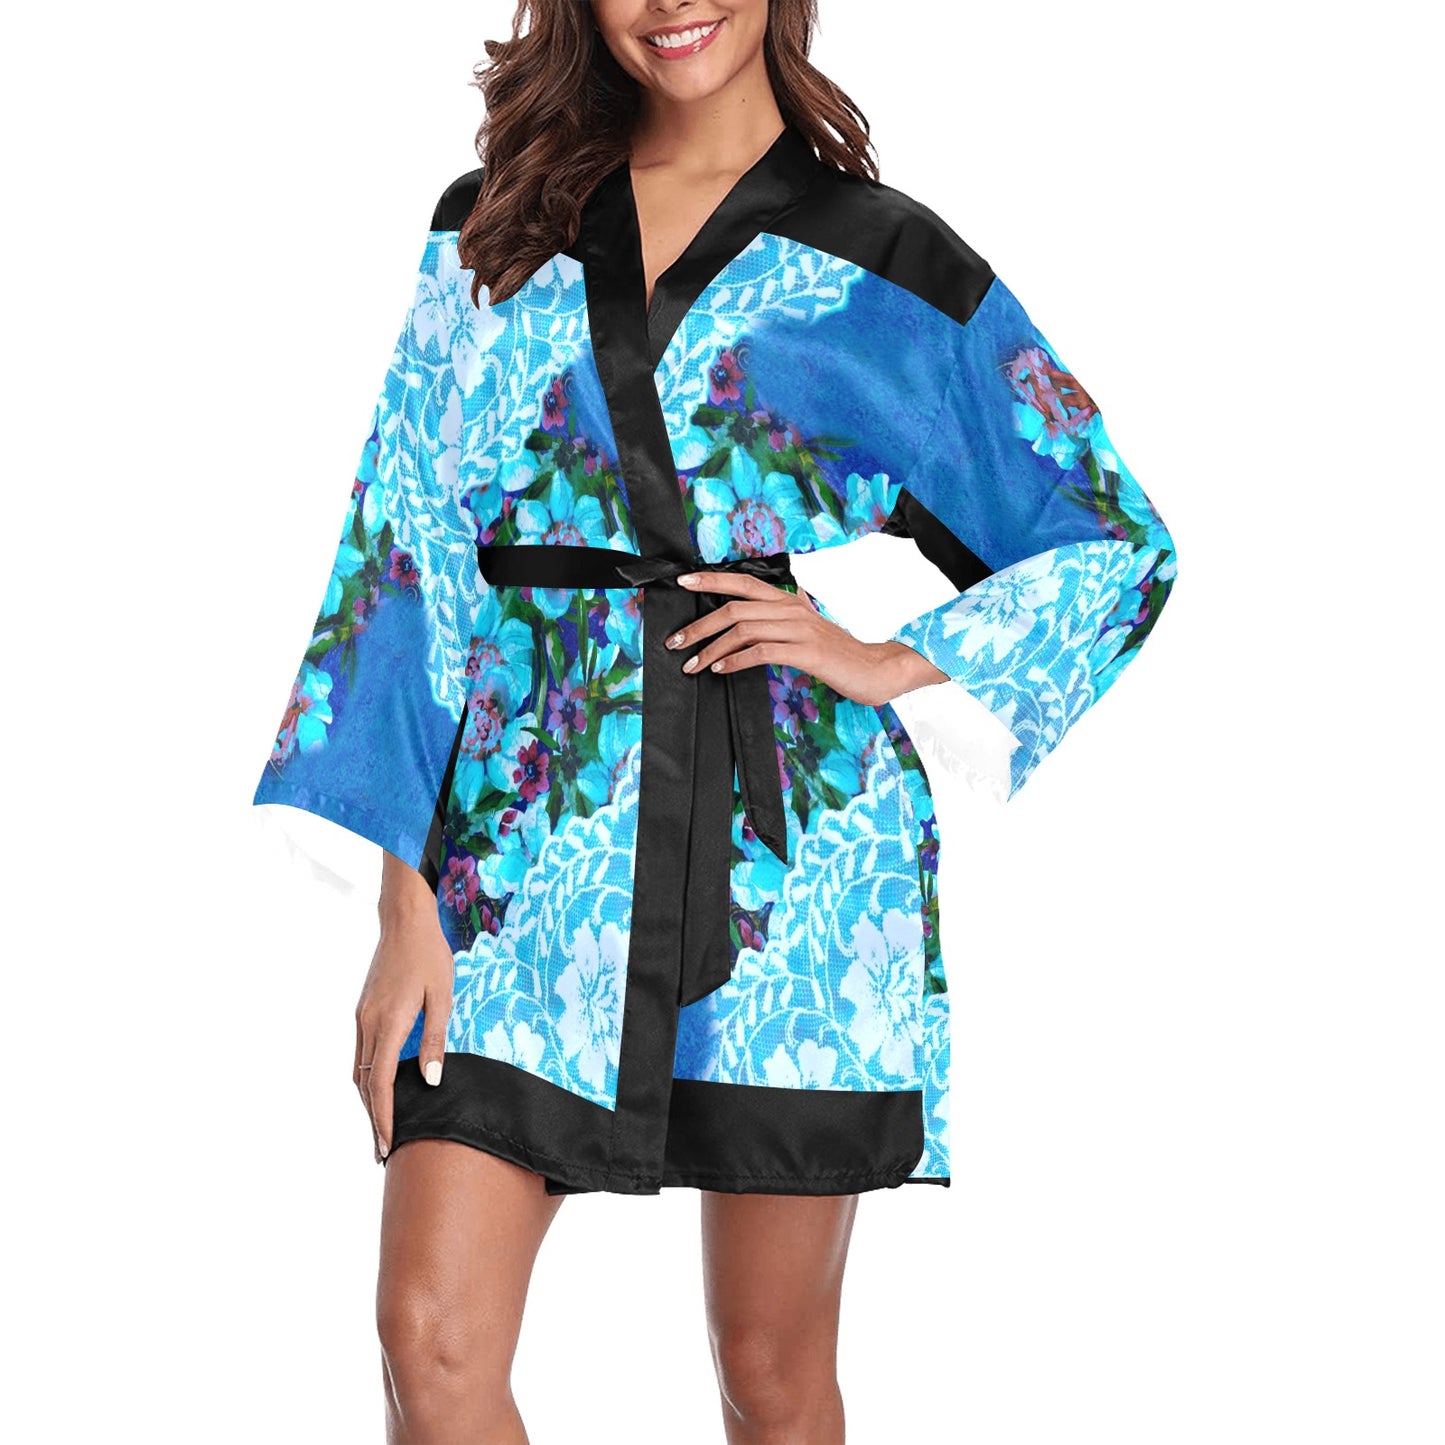 Victorian Lace Kimono Robe, Black or White Trim, Sizes XS to 2XL, Design 49